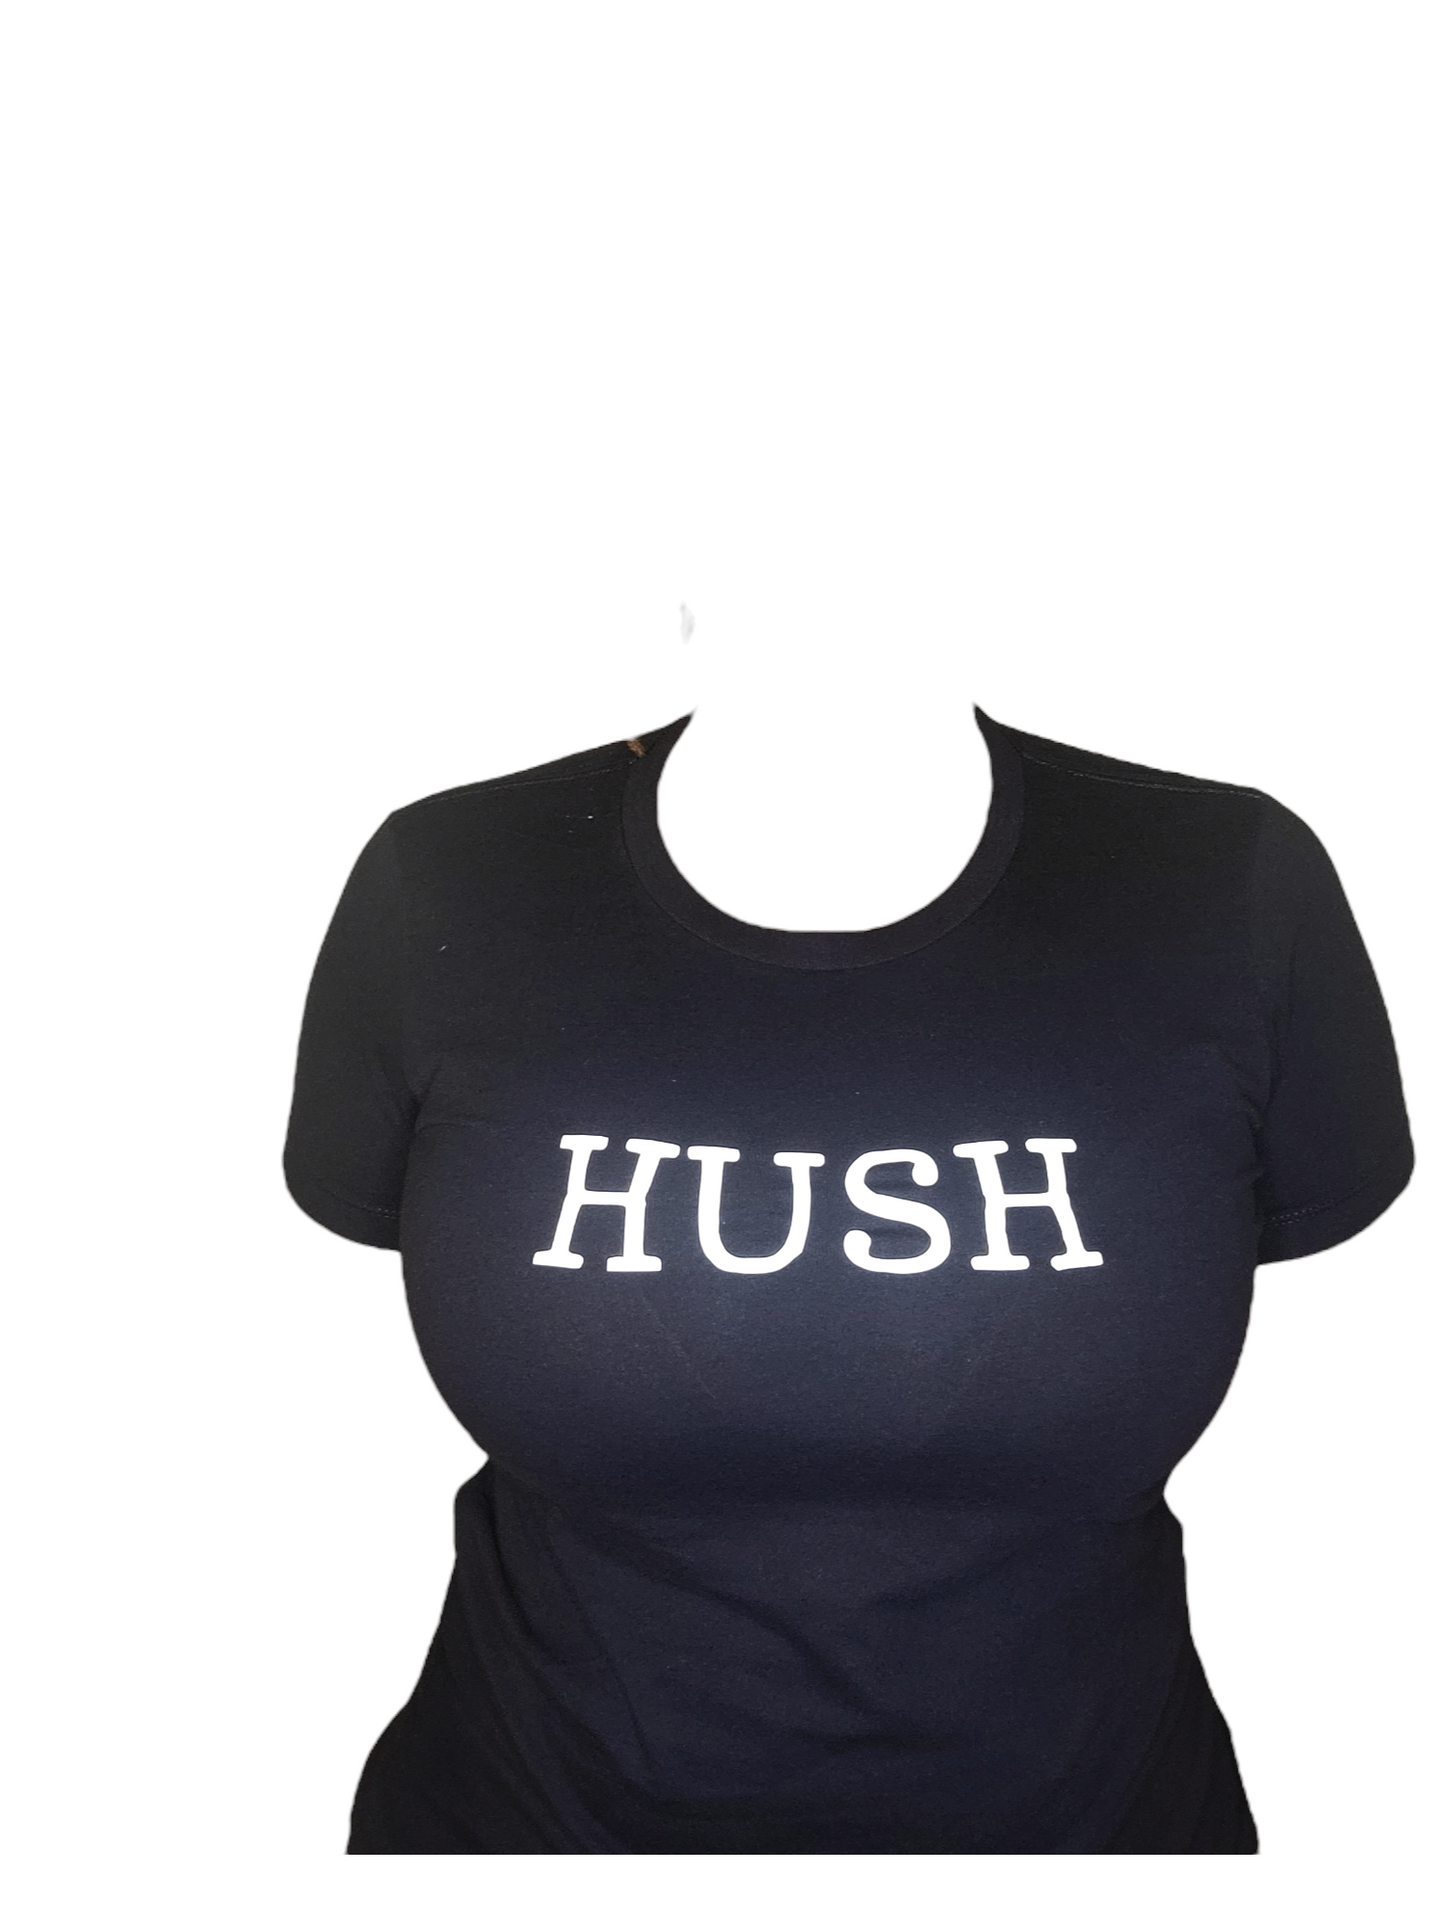 HUSH t-shirt women